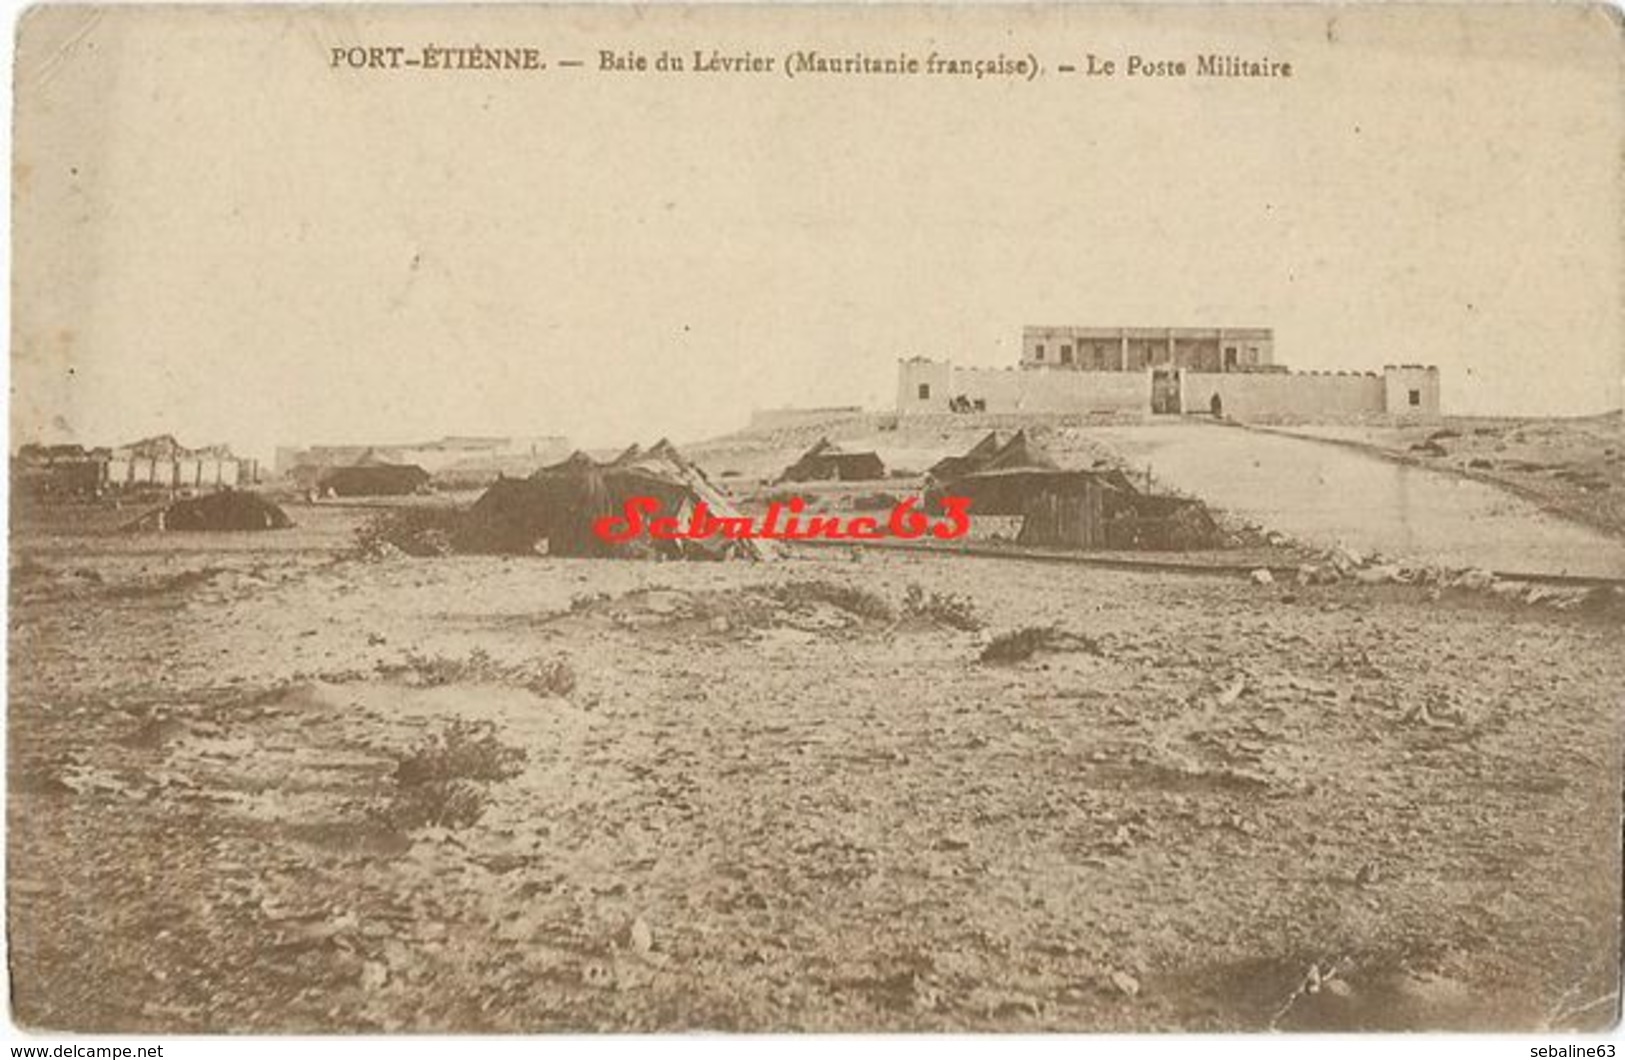 Port-Etienne - Baie Du Lévrier - Le Poste Militaire - Mauritania